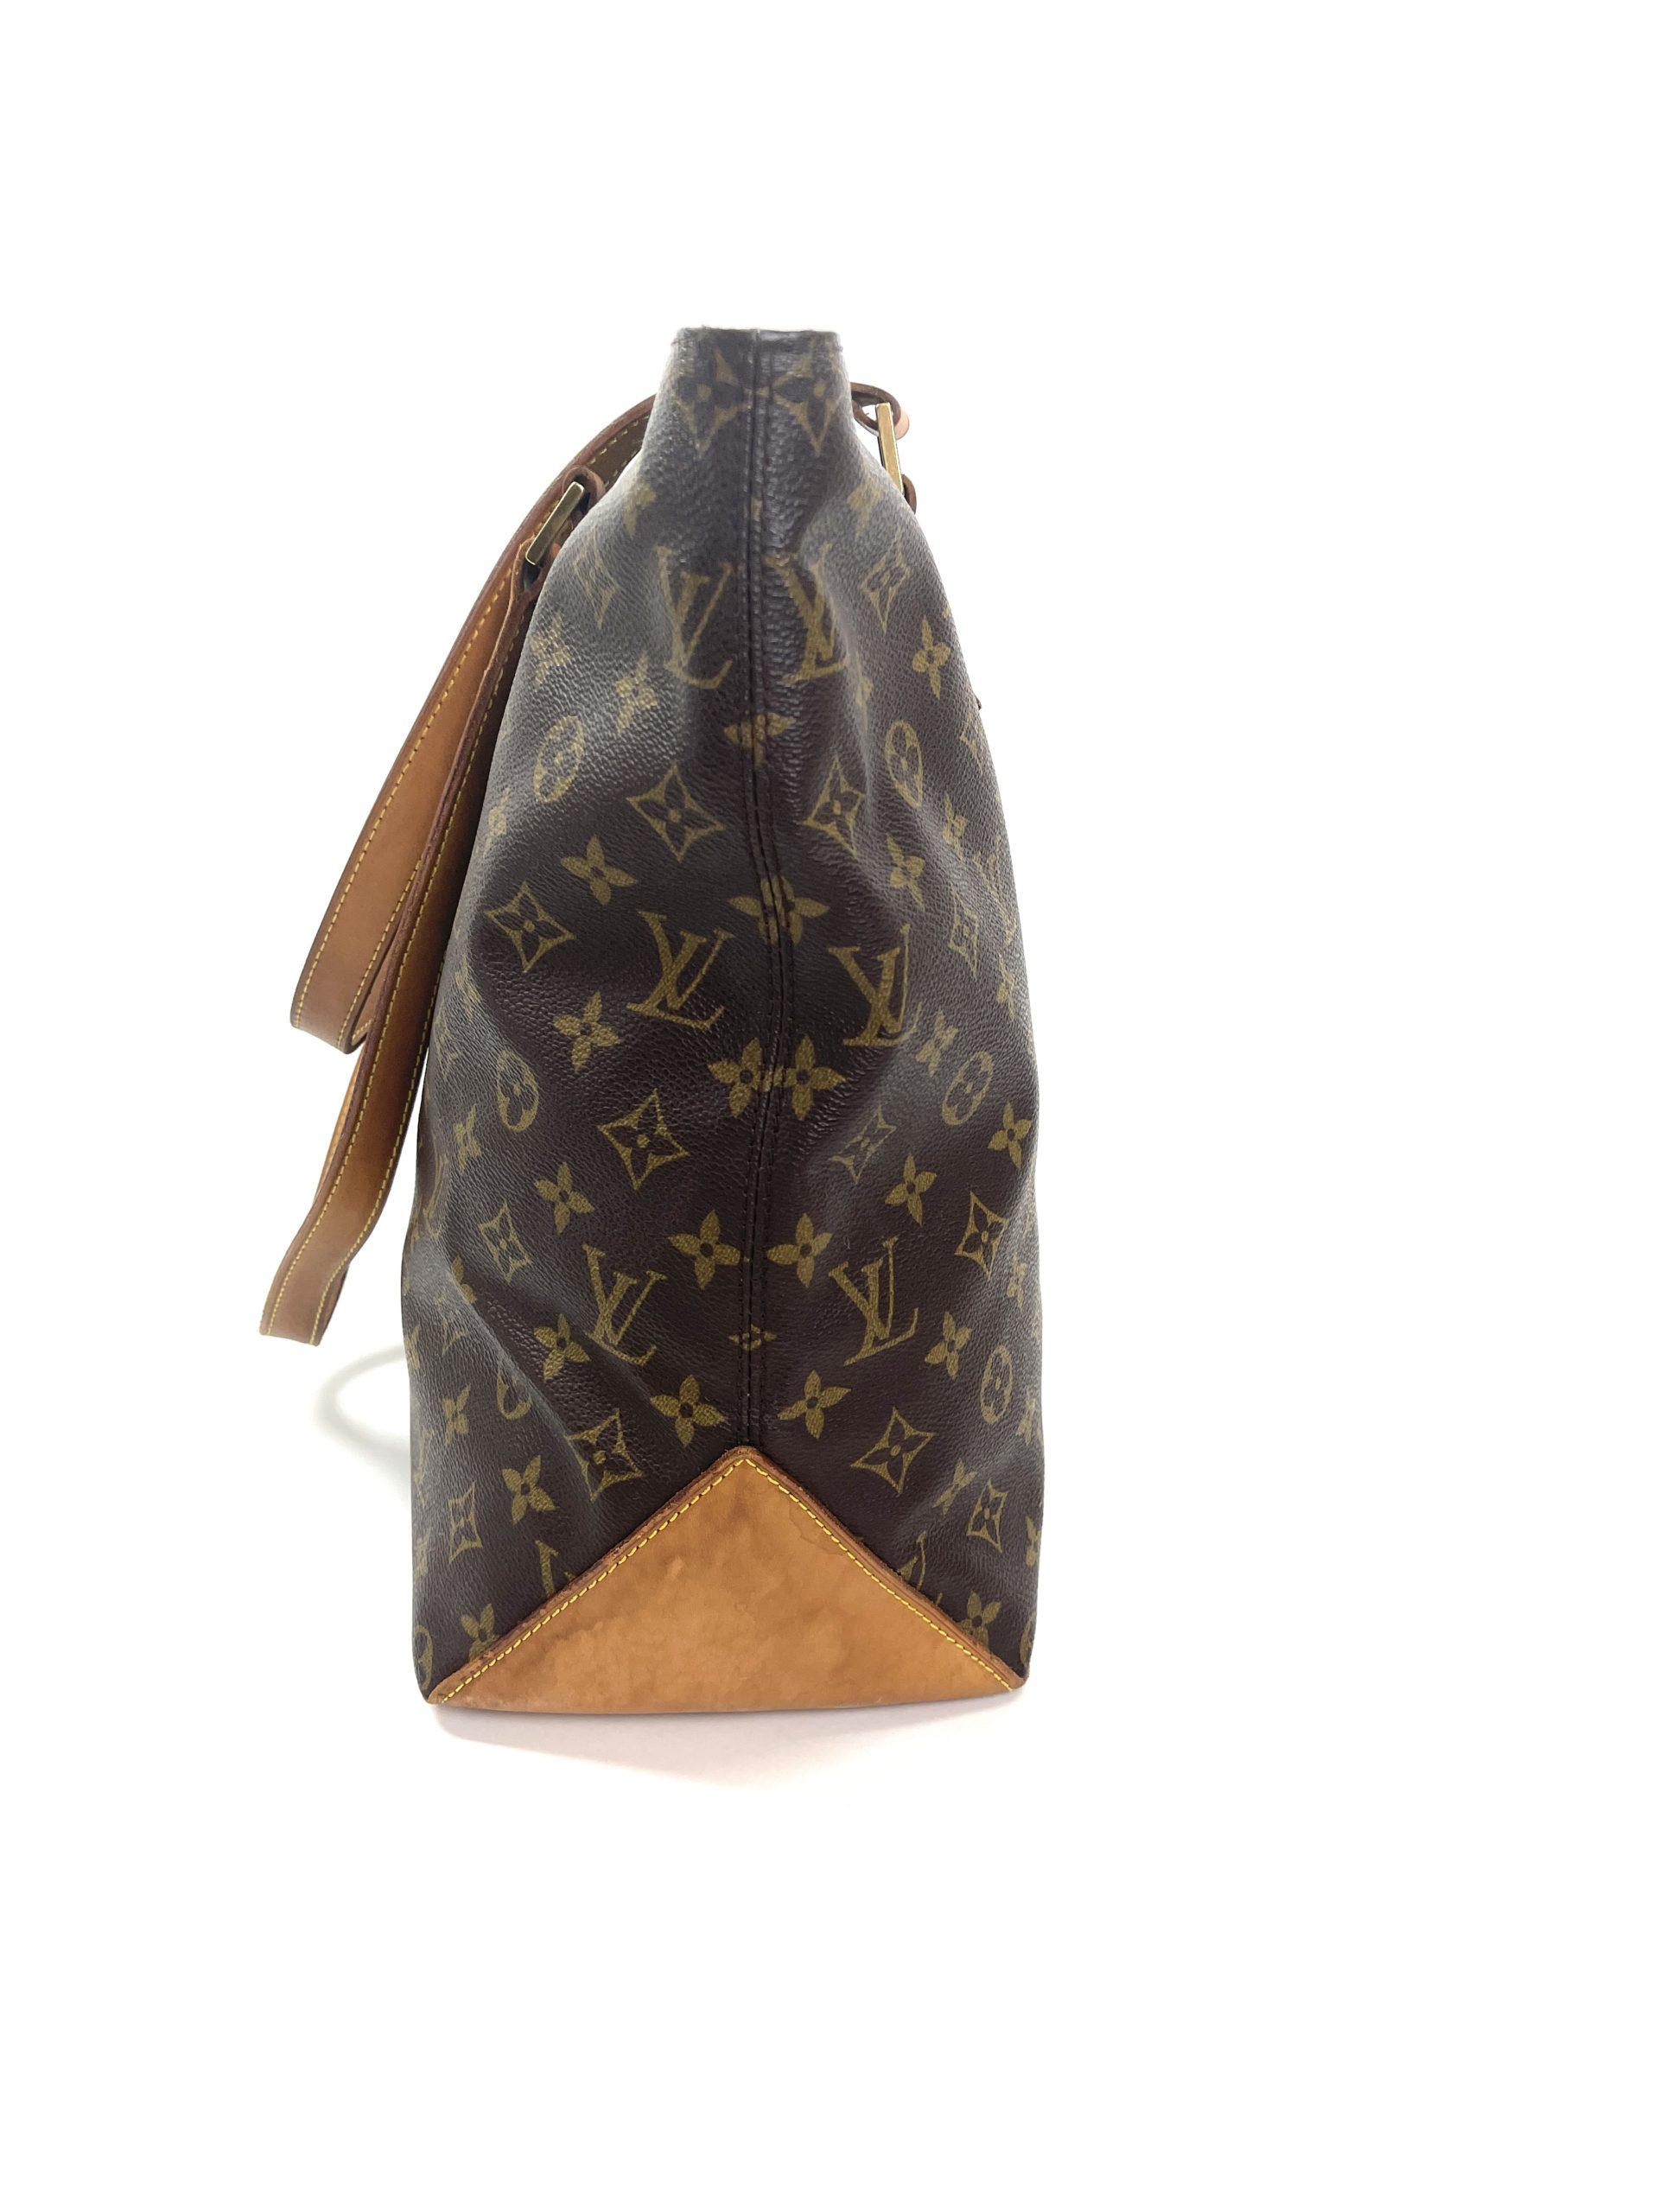 Used Brown Louis Vuitton Monogram Cabas Mezzo Tote Shoulder Bag